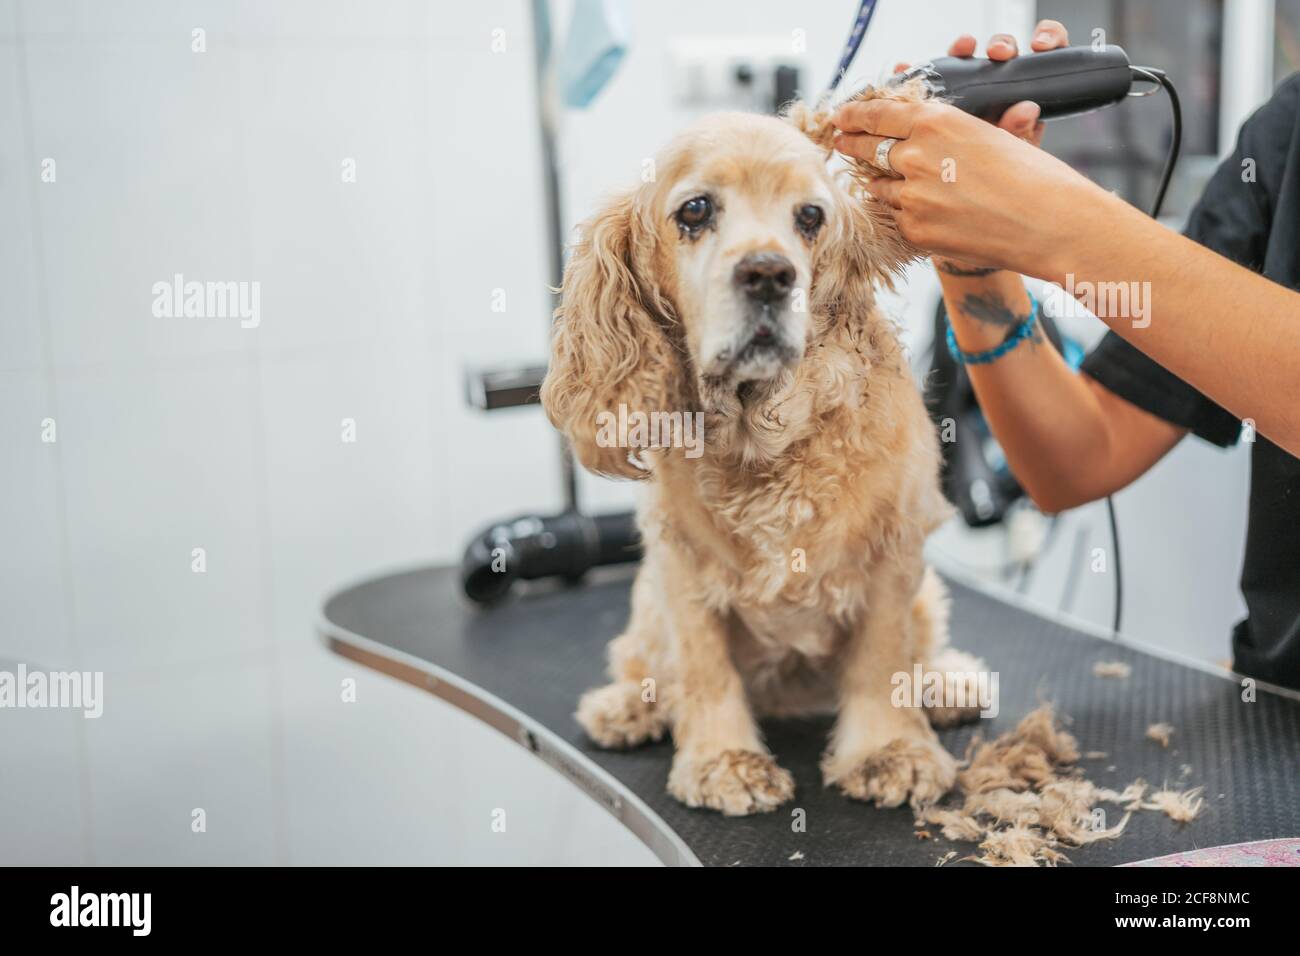 Anonyme Frau, die im Friseursalon Pelz am Ohr des traurigen Spanielhundes mit einem elektrischen Rasierer auf dem Tisch trimmt Stockfoto